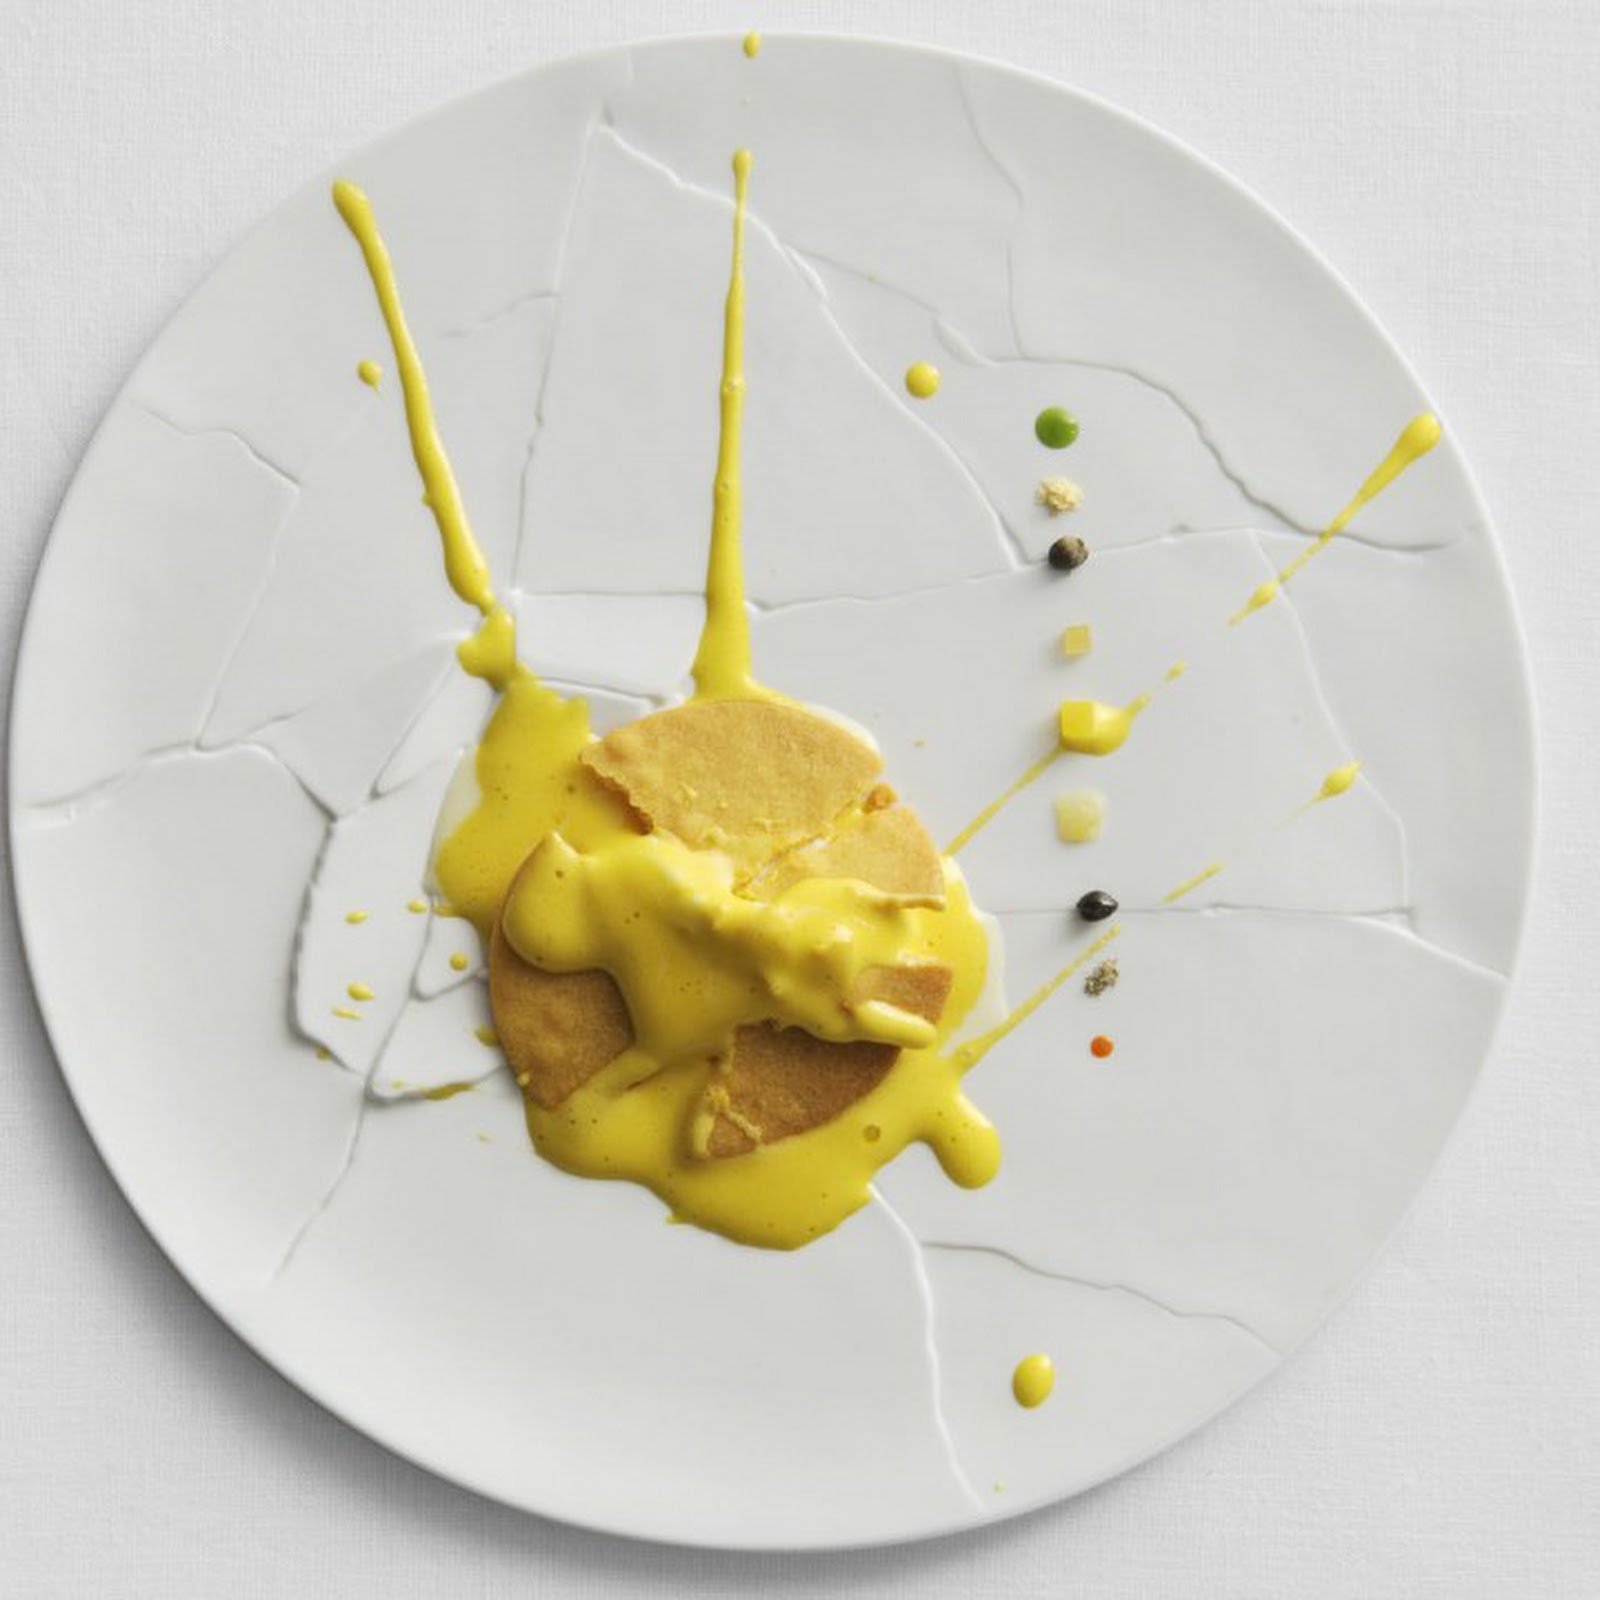 Przywództwo od kuchni: Massimo Bottura i René Redzepi. Studium przypadku